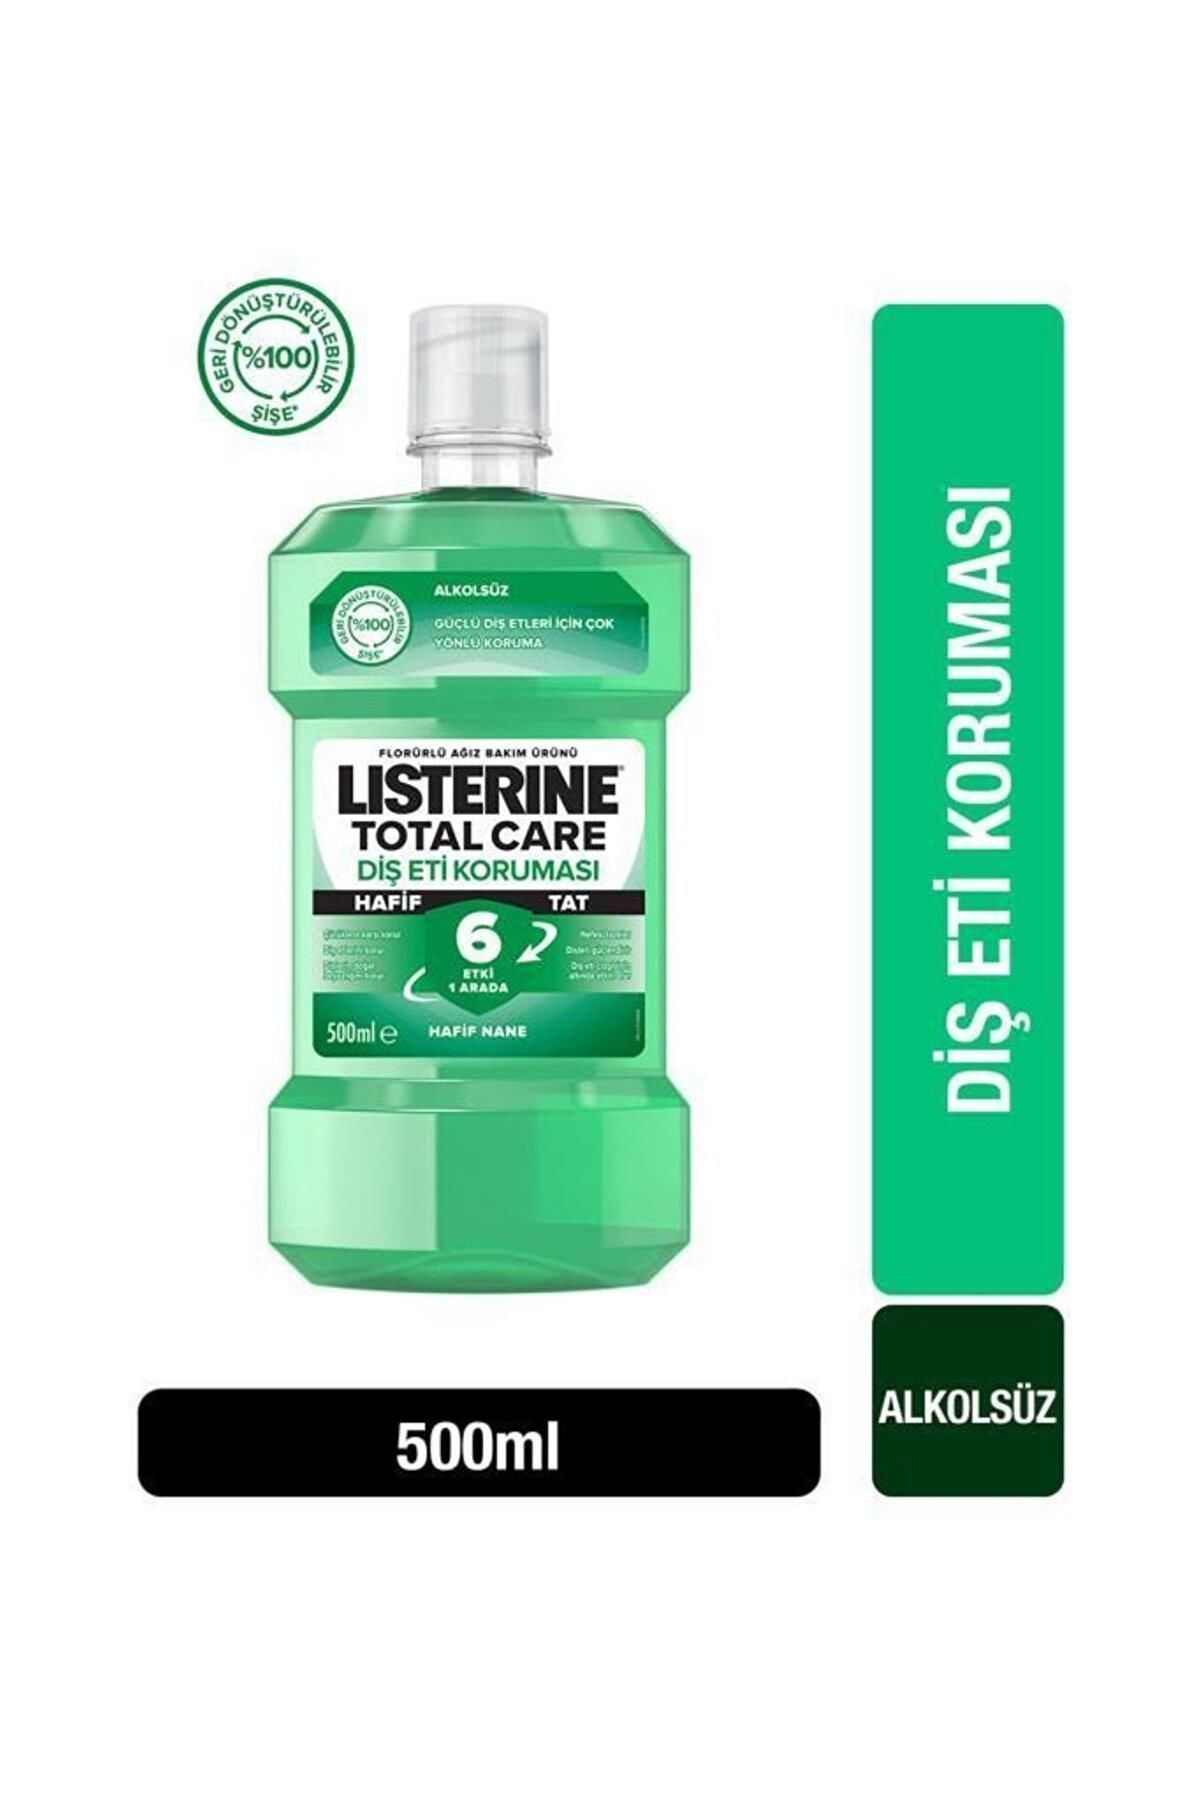 Listerine Alkolsüz Diş ve Diş Eti Koruması Ağız Bakım Suyu 500 ml